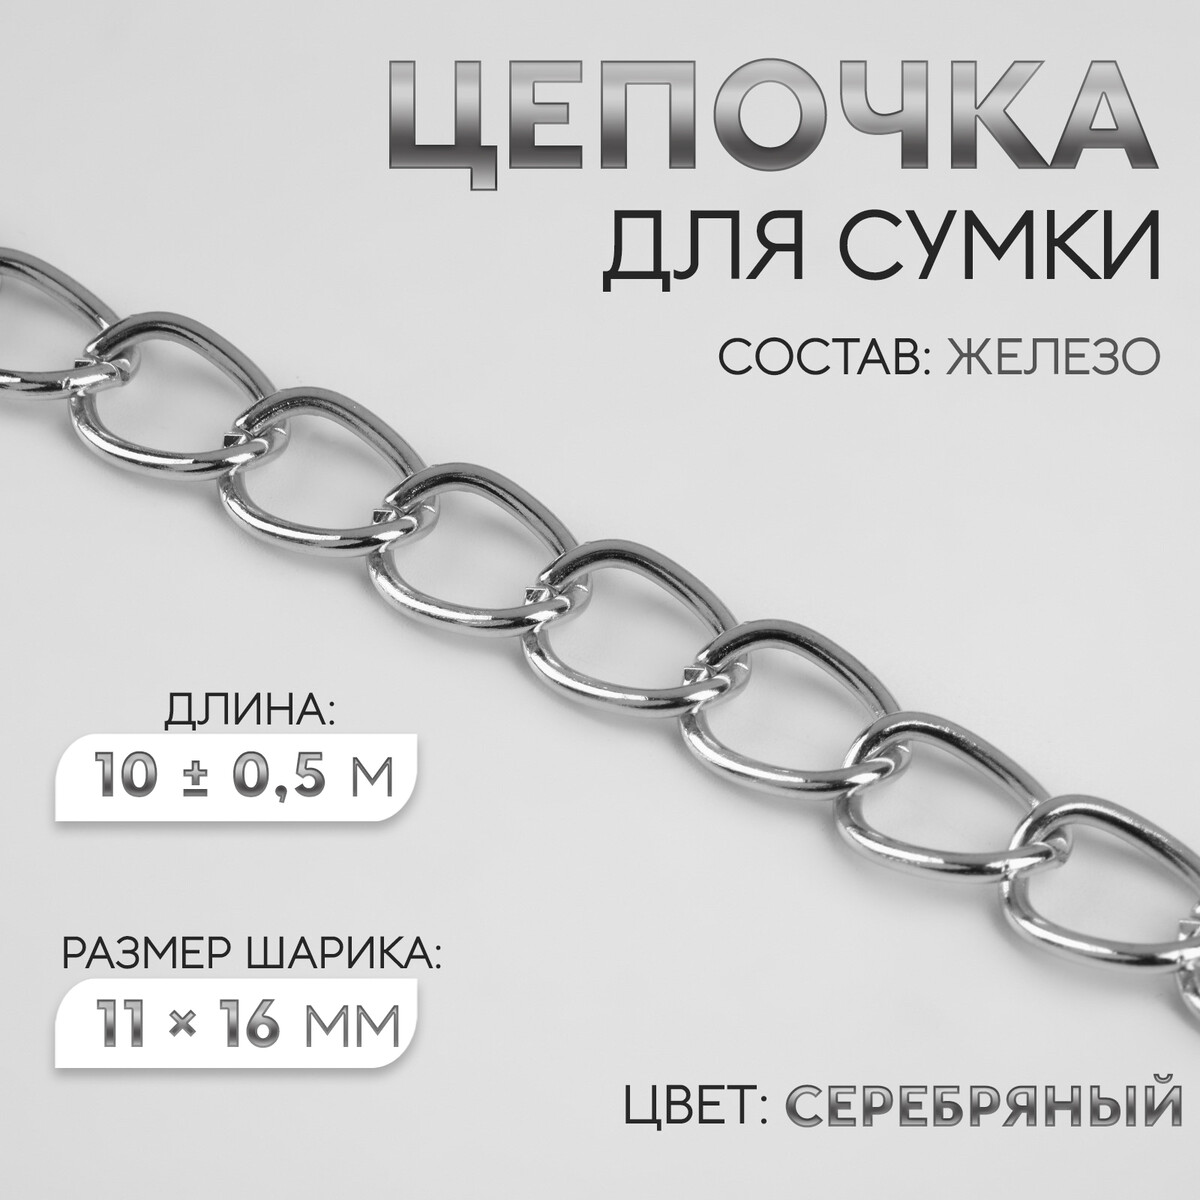 Цепочка для сумки, железная, 11 × 16 мм, 10 ± 0,5 м, цвет серебряный цепочка для сумки плоская алюминиевая 7 8 × 11 1 мм 10 ± 0 5 м серебряный